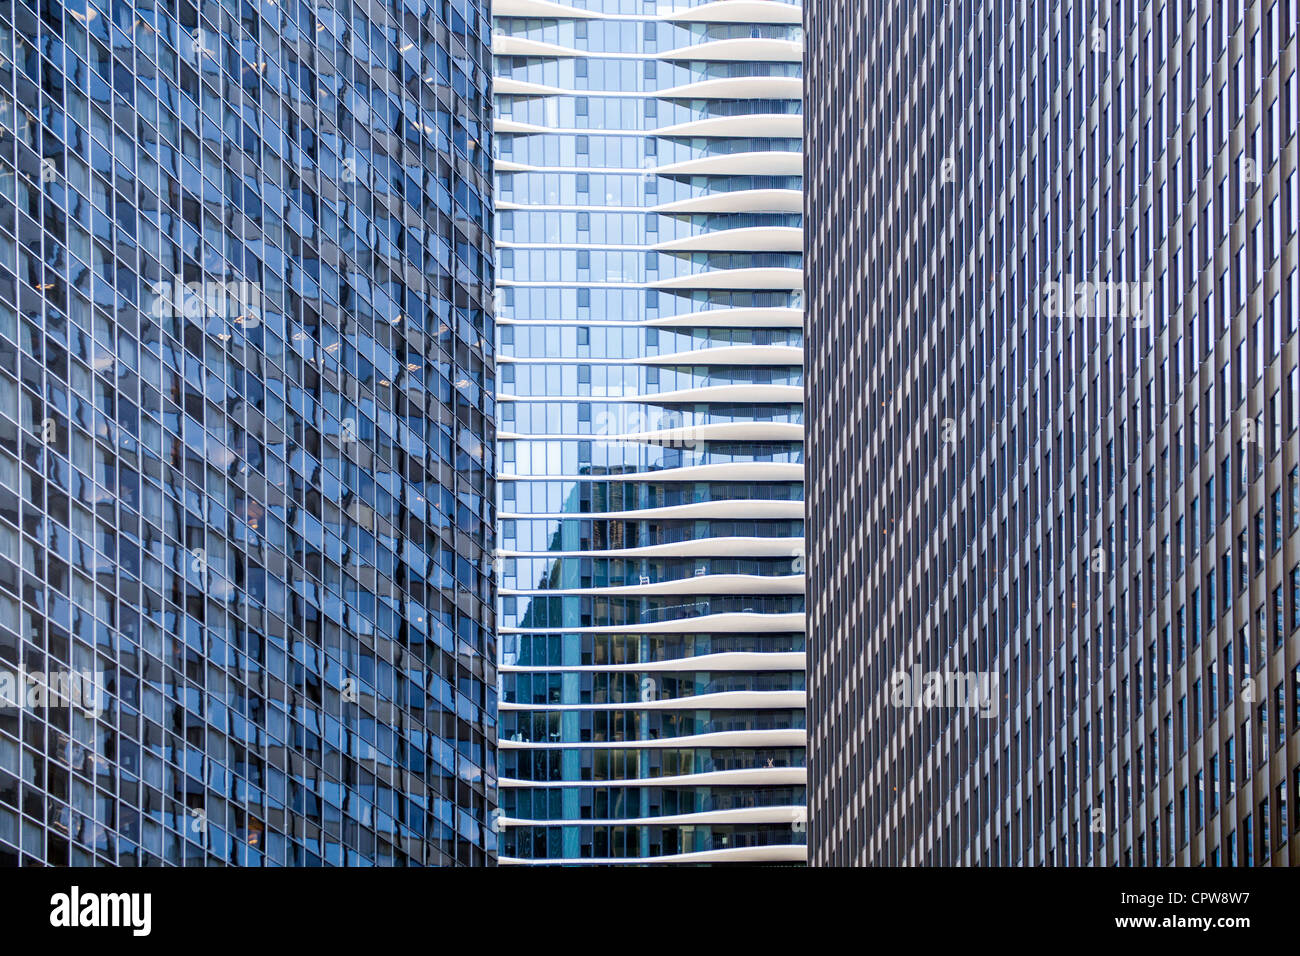 Stadt-Bürogebäude - Gebäude in der Innenstadt von Chicago Stockfoto